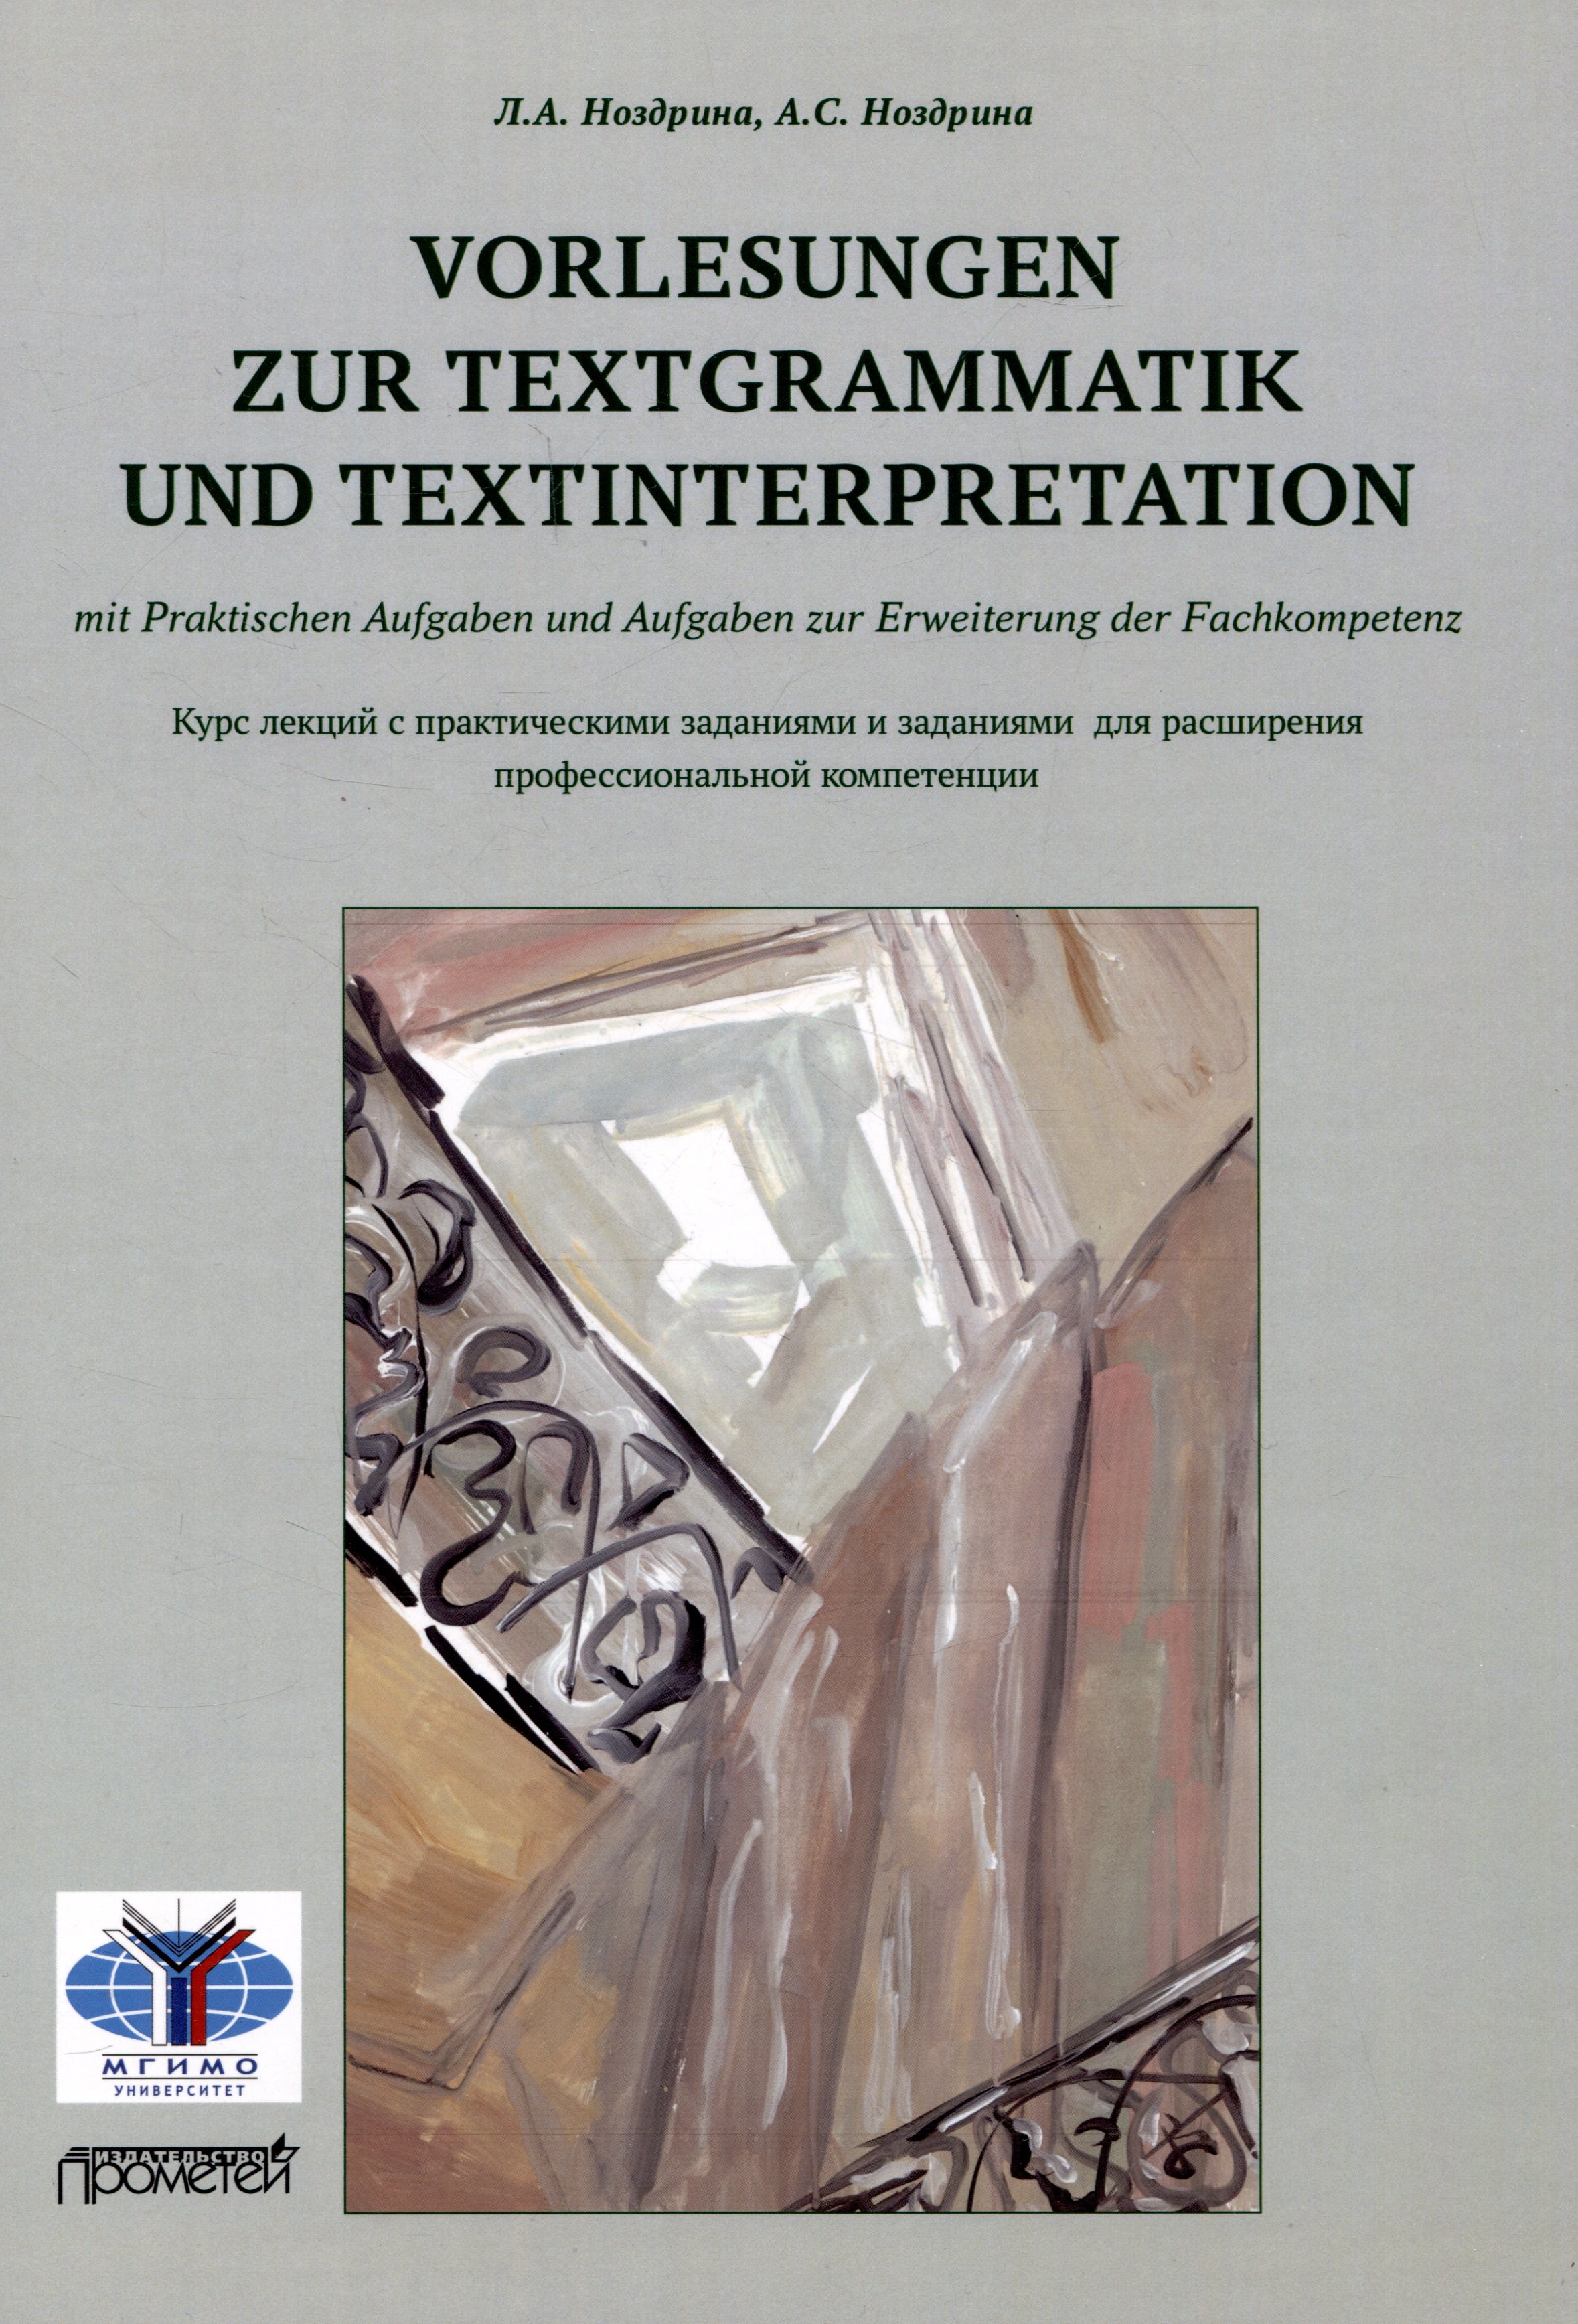 Vorlesungen zur Textgrammatik und Textinterpretation (mit Praktischen Aufgaben und Aufgaben zur Erweiterung der Fachkompetenz):           